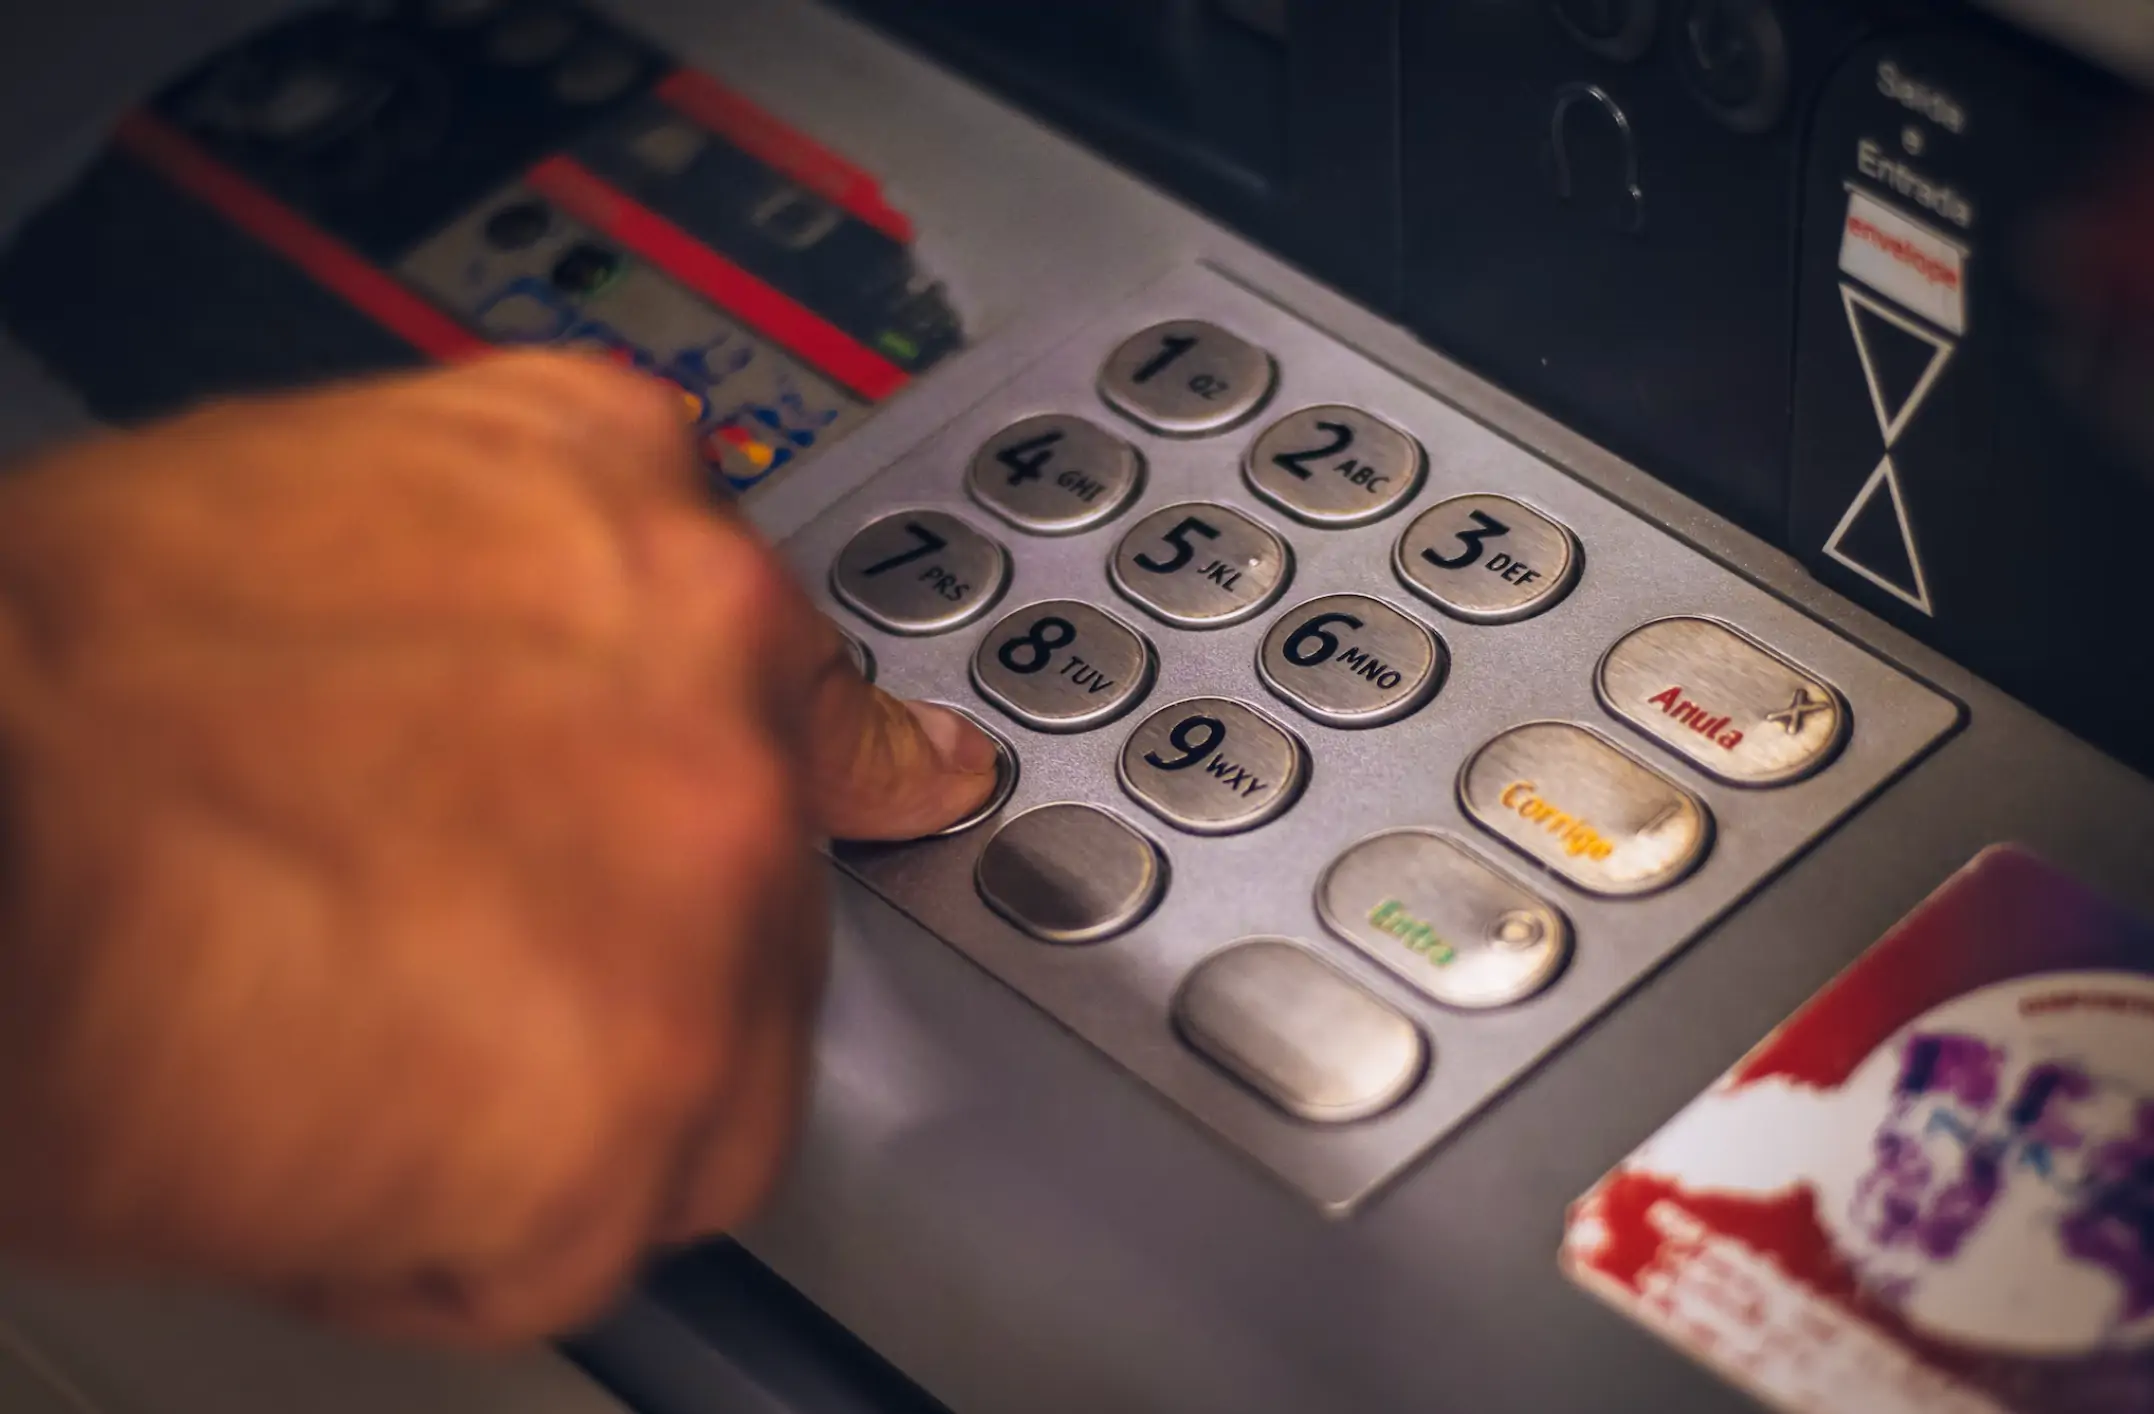 미성년자 통장개설 시 ATM 기기에서 하루 입출금은 30만 원으로 제한된다